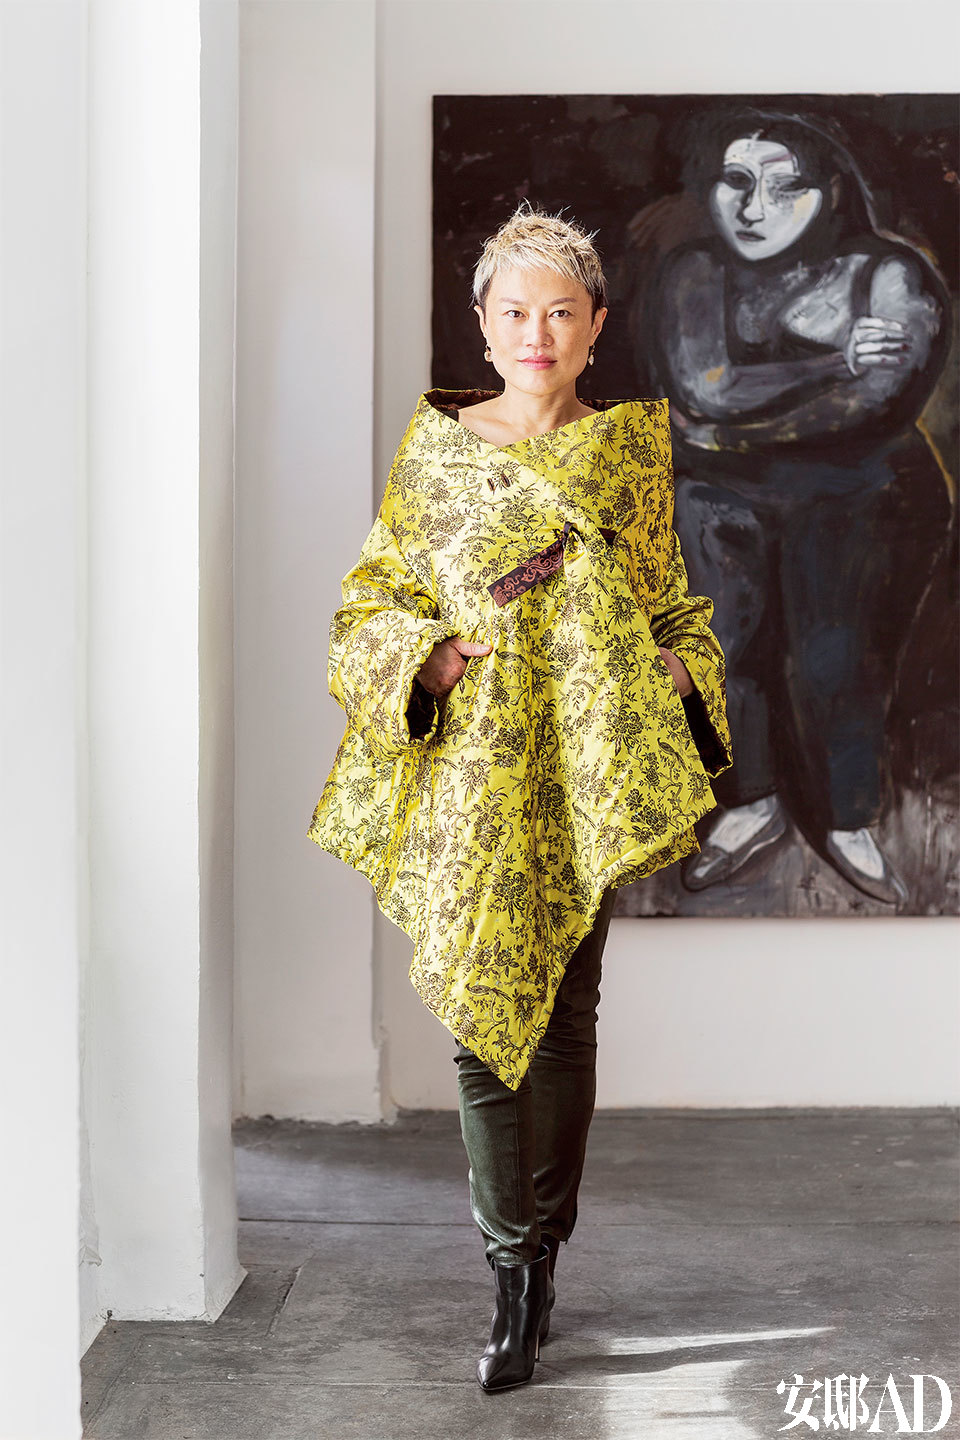 主人: 韩枫，作为1985年就移居纽约的“老土中国人”，从当年勇敢宣称自己“要做时装设计师”起，就注定会拥有不平凡的人生轨迹。她以用面料商店的废布头儿做 成的围巾起步，在1994年推出了首个成衣系列，从此每年在纽约举办两季的时装秀，成为最早成功征战纽约秀场的中国时装设计师，拥有不少明星客户。除了时 装，她还涉猎陶艺、玻璃制品甚至博物馆室内装饰等等跨界设计。2004年，韩枫回上海开设了自己的品牌店铺，后来索性将工作室直接搬回上海。2005年她 参与了英国大导演Anthony Minghella指导的新版歌剧《蝴蝶夫人》，为其设计舞台服装，此后又完成了多部戏剧的服装设计。如今她在中美之间穿行，像一座桥梁般为好设计的共享 尽自己的一份力量。韩枫穿着自己设计的服饰站在卧室中，背景墙上挂着画家张恩利以自己的太太为模特而创作的肖像画。和暖的冬日阳光通过家中的大窗洒向她的 金色披肩式华服，令韩枫整个人都光彩熠熠 。